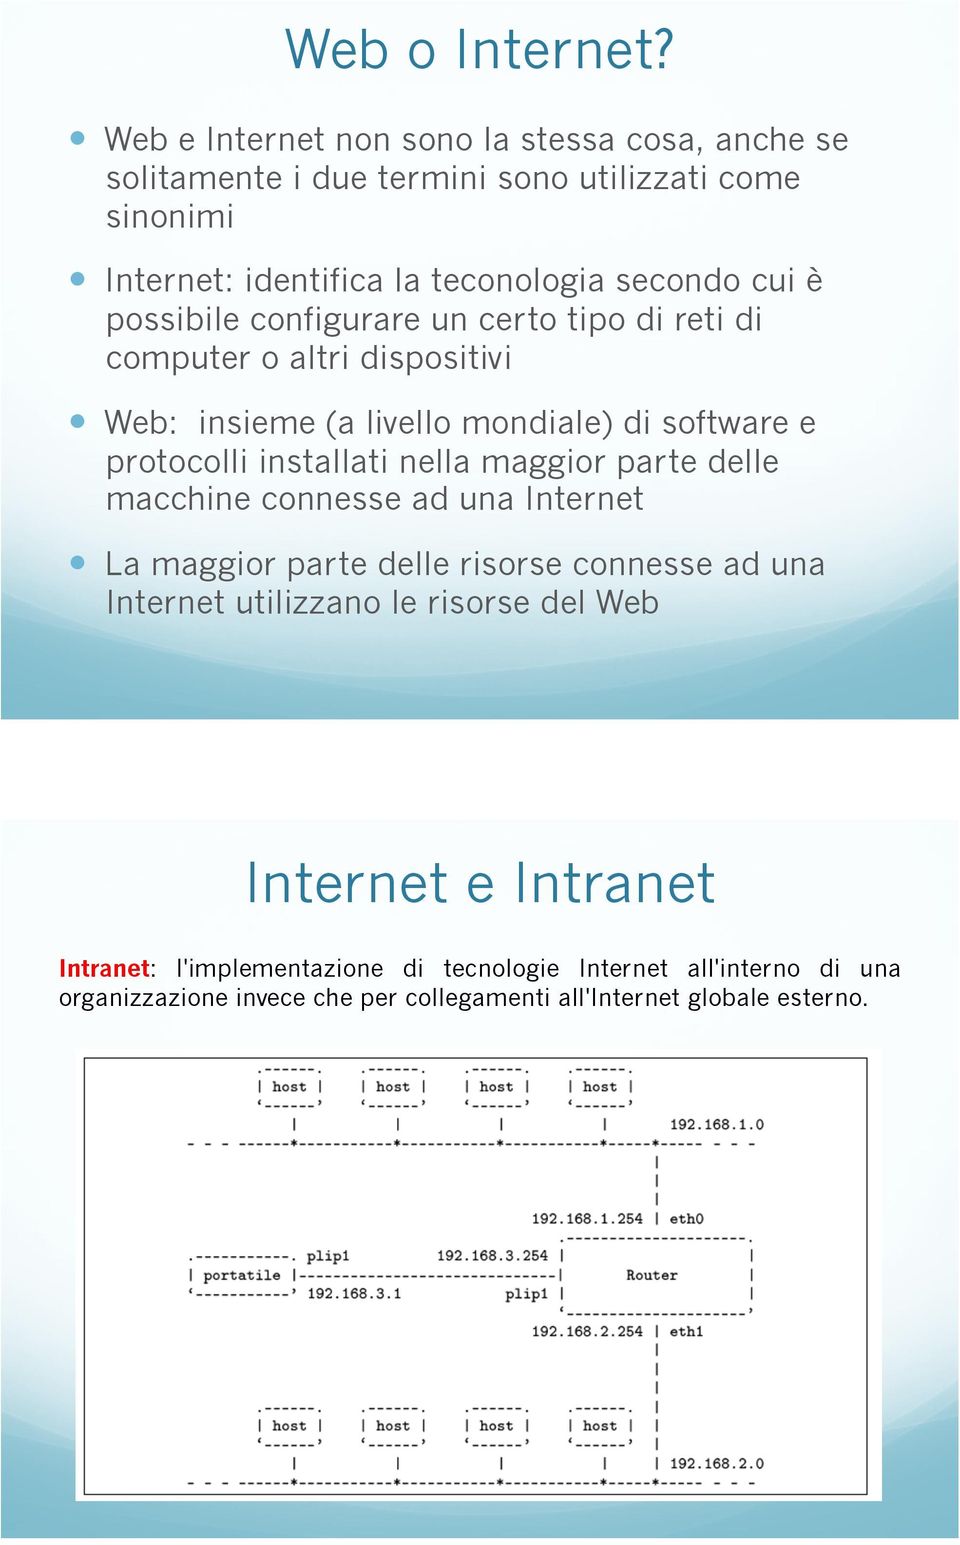 Web: insieme (a livello mondiale) di software e protocolli installati nella maggior parte delle macchine connesse ad una Internet!